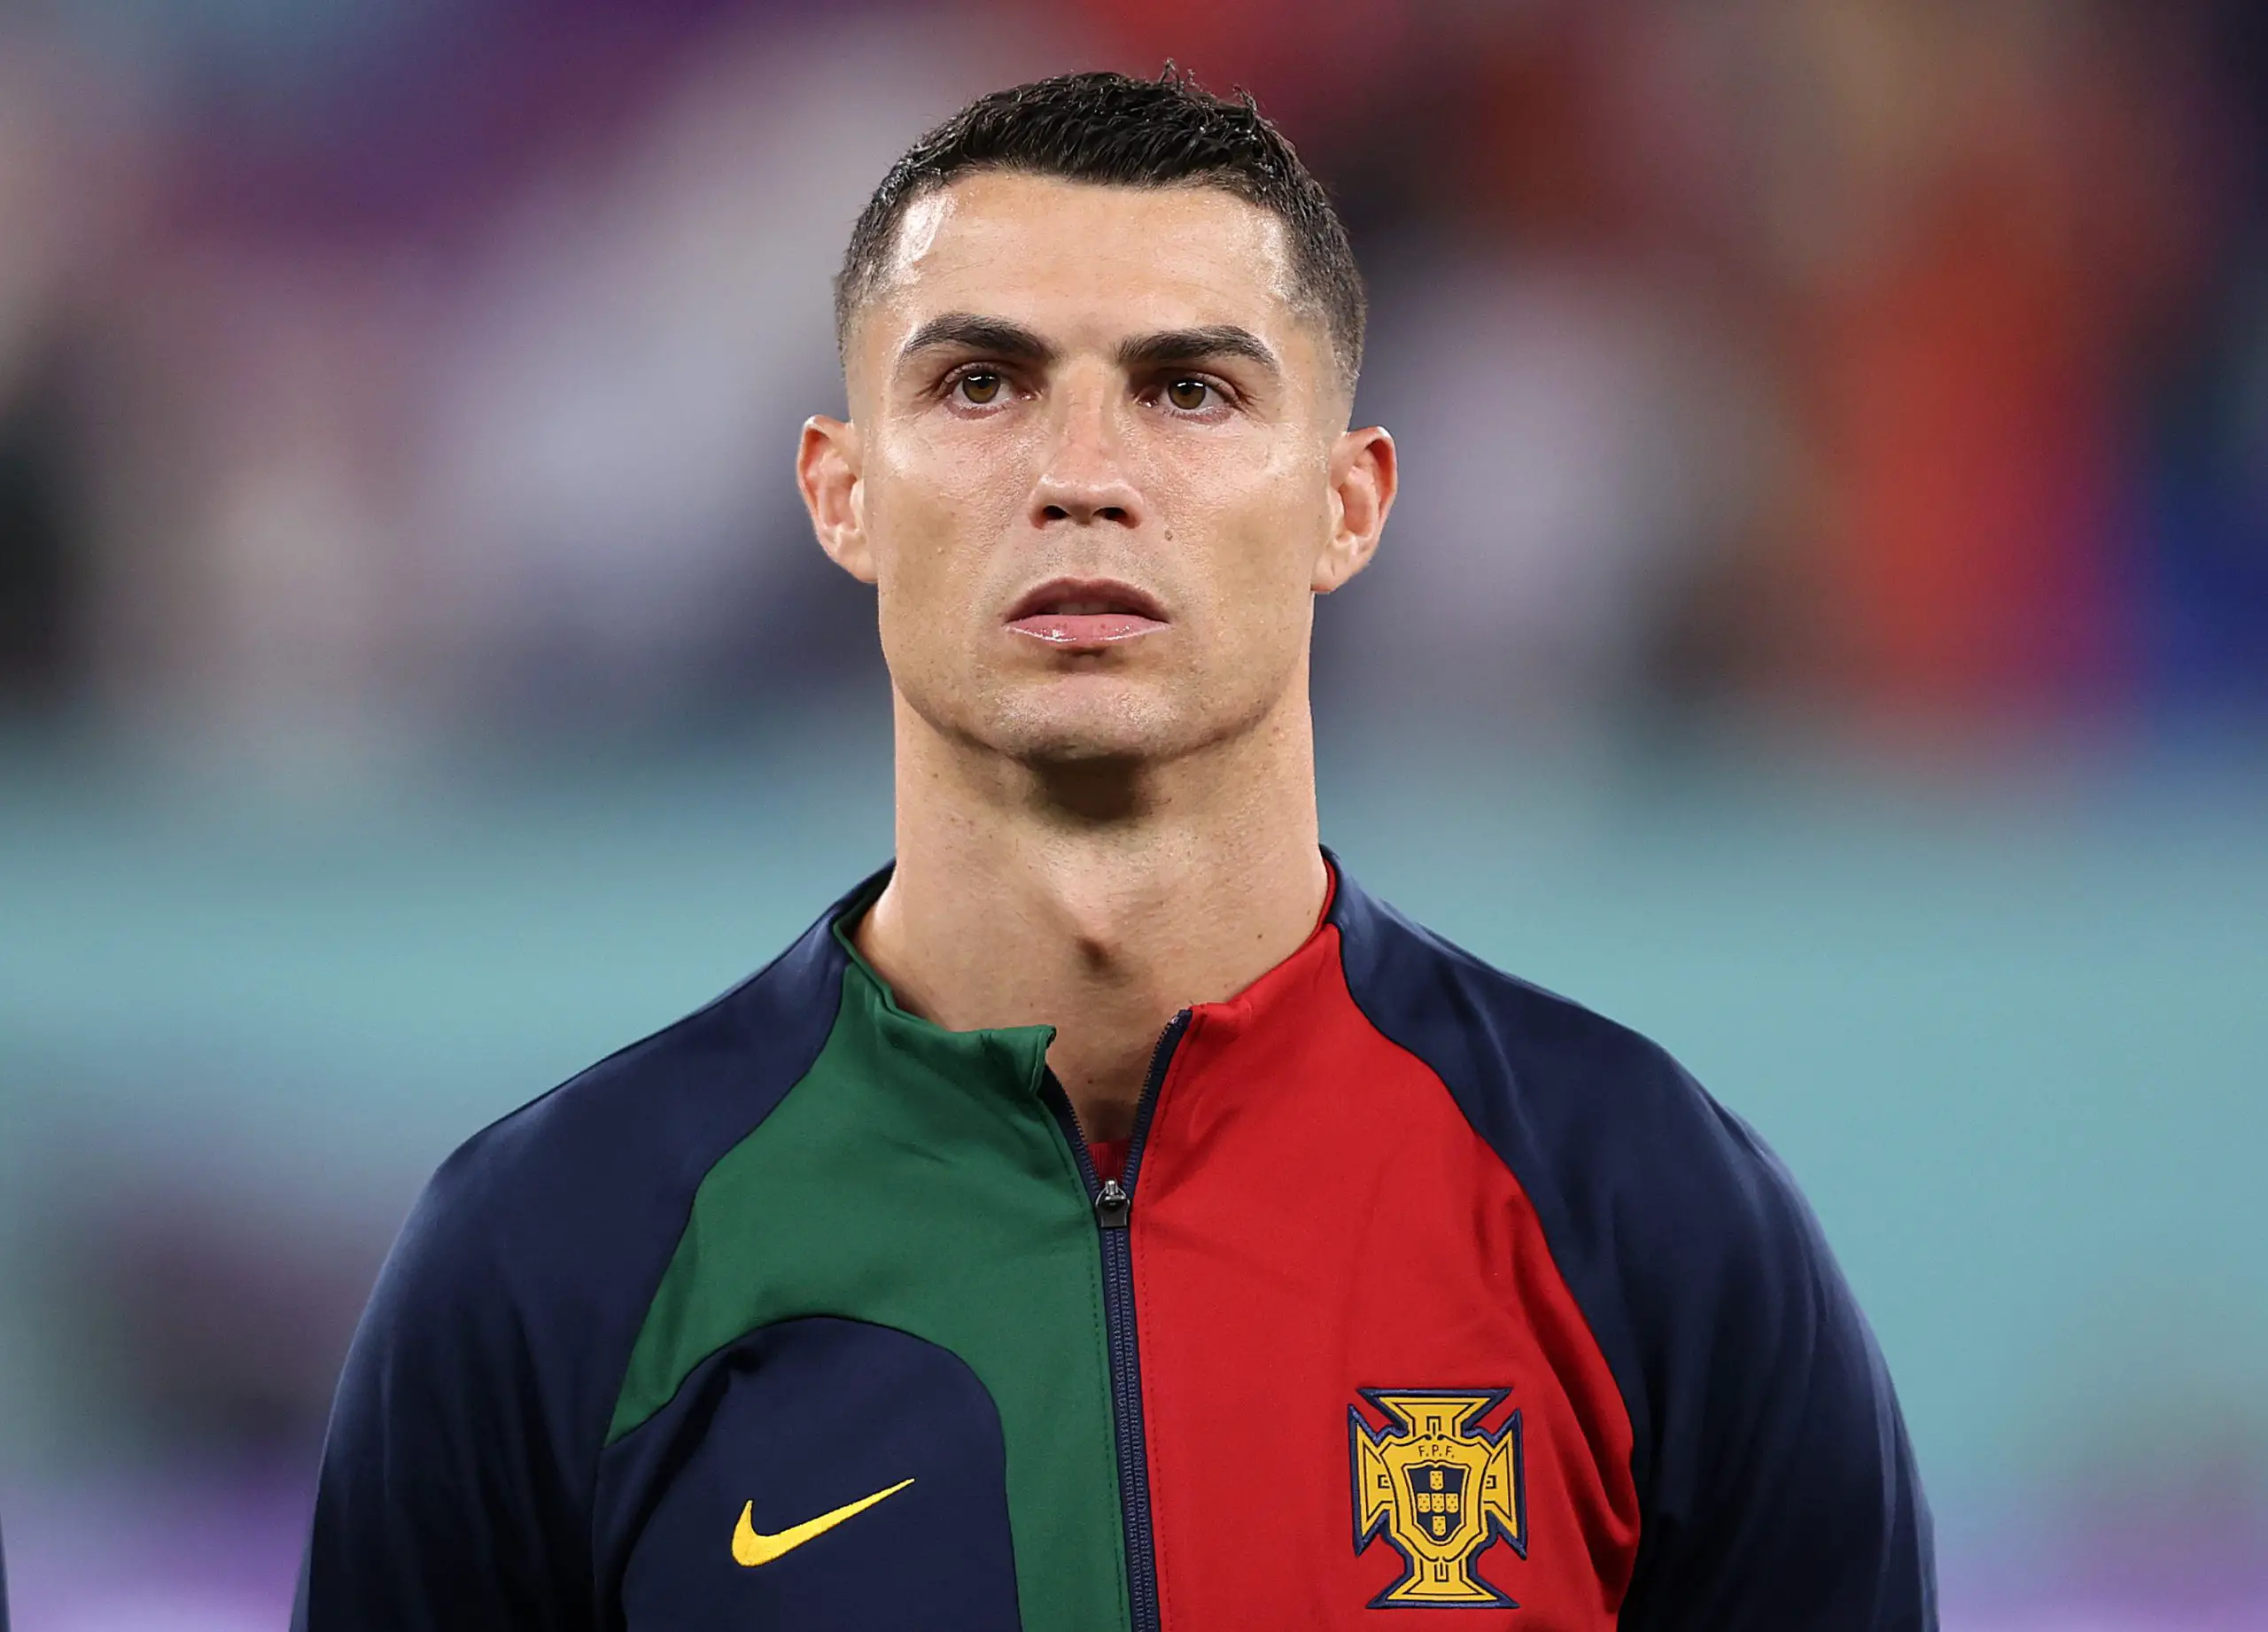 Cristiano Ronaldo là đội trưởng đội tuyển bóng đá quốc gia Bồ Đào Nha.